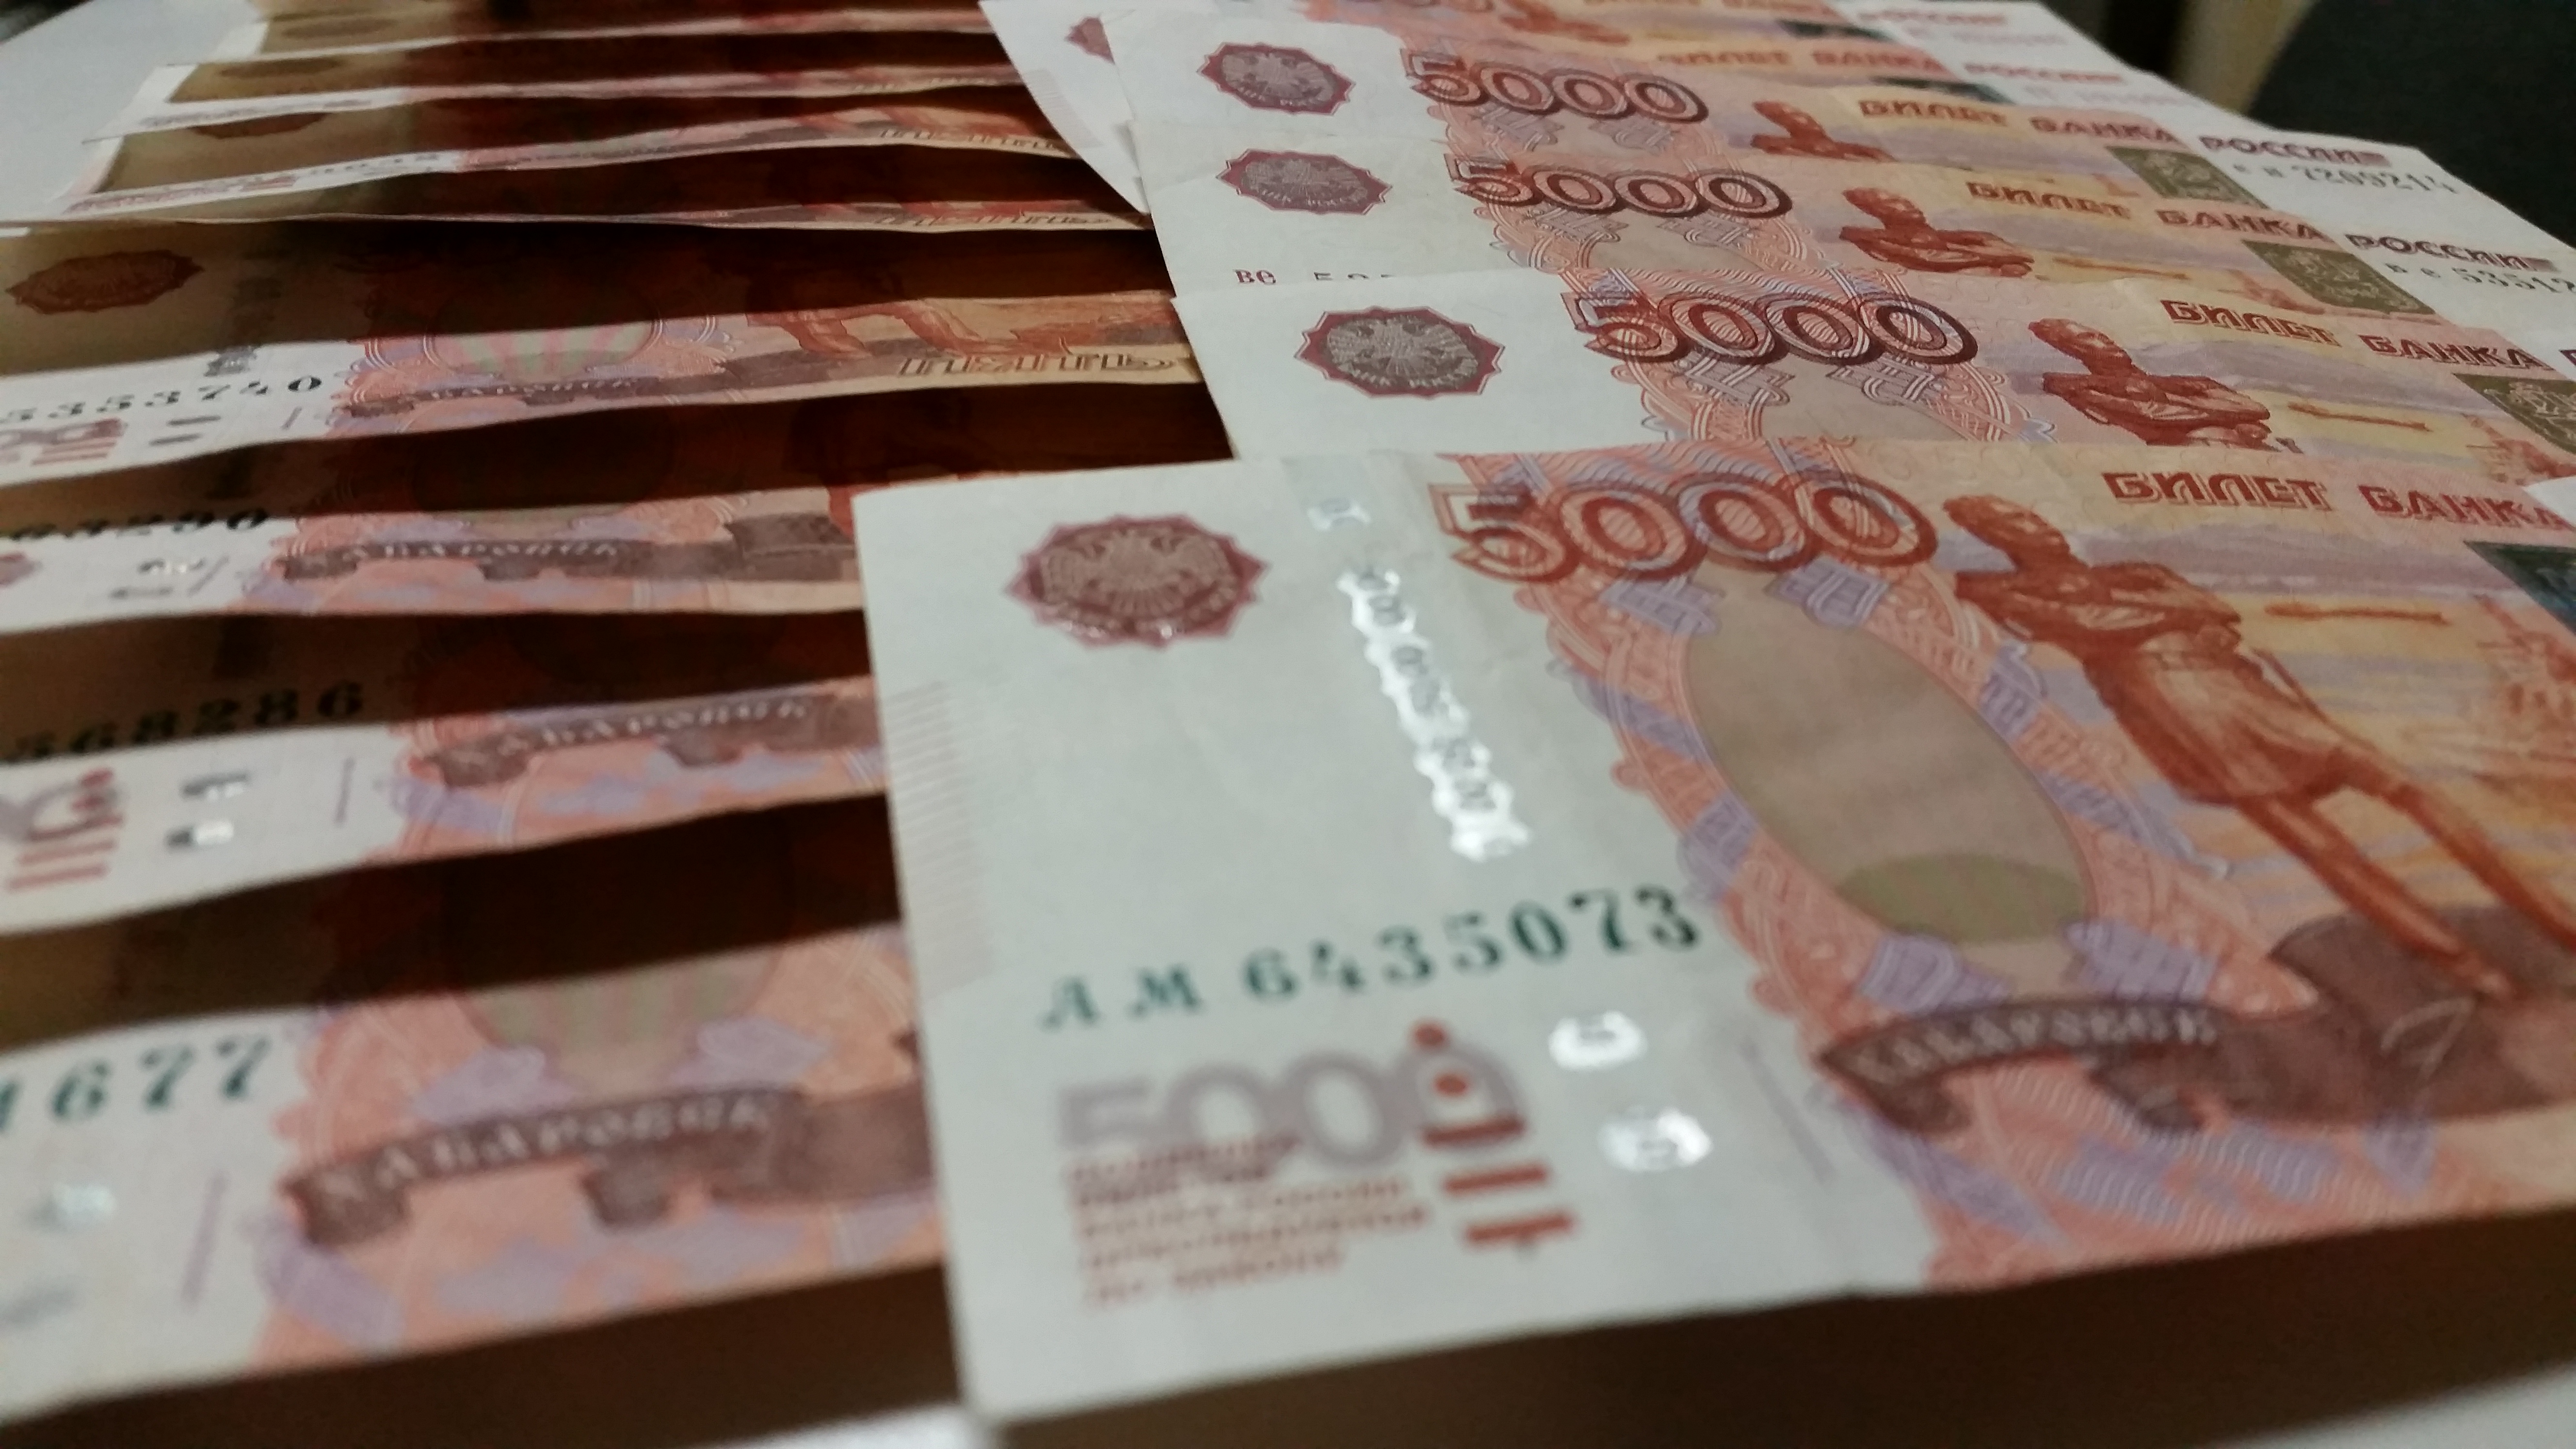 2.5 миллиона рублей